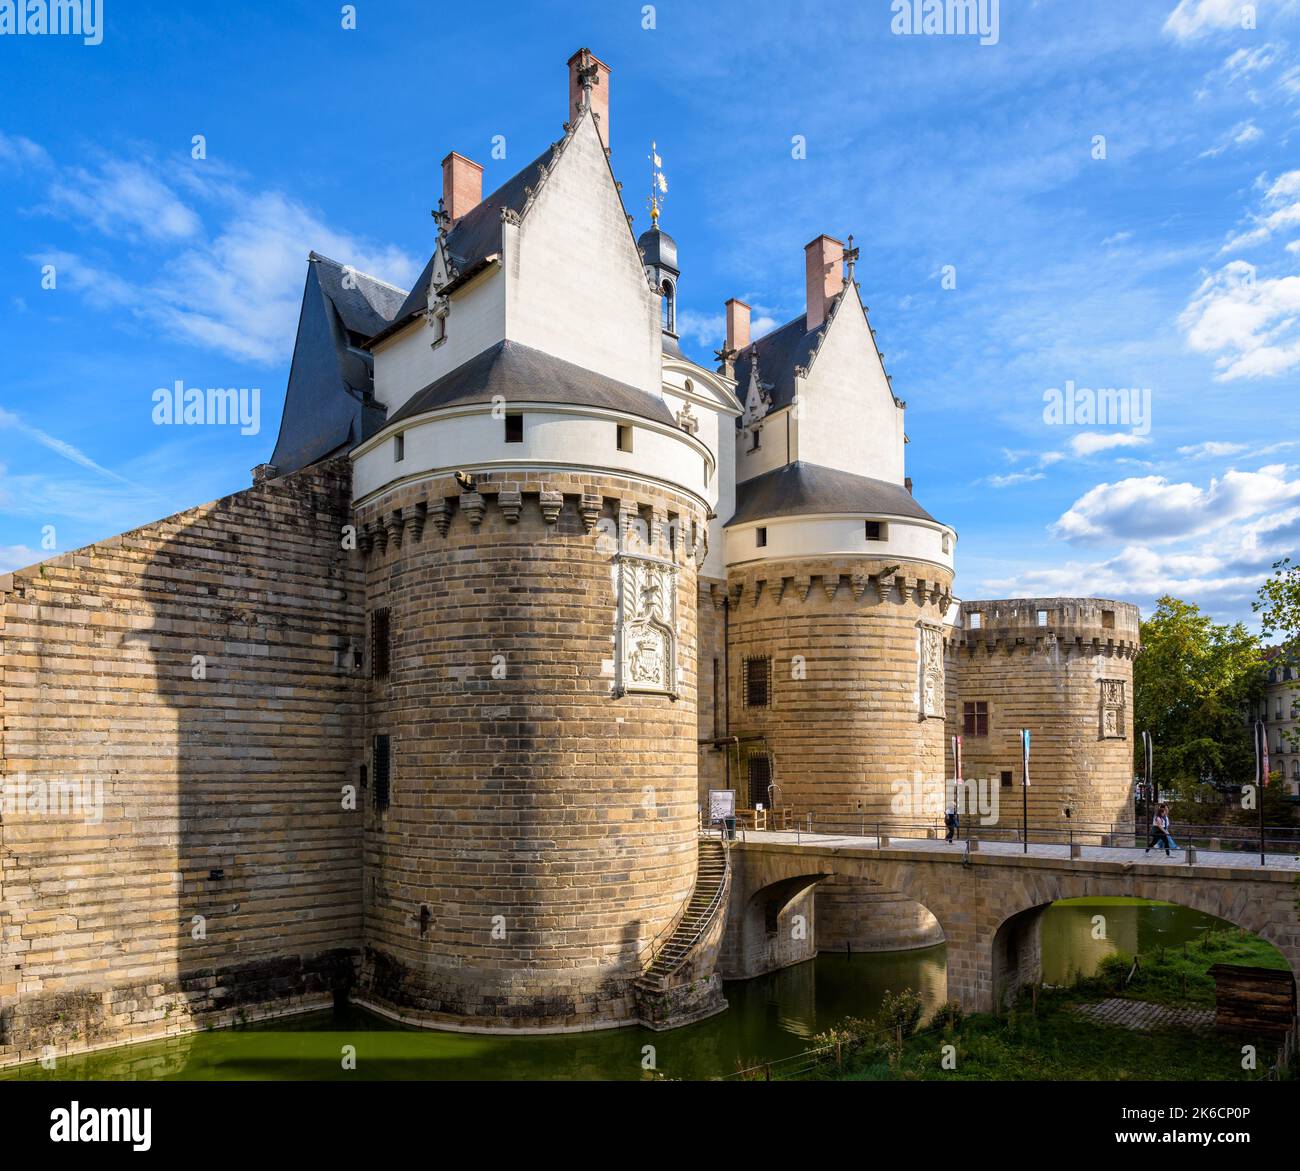 Gatehouse avec deux tours et pont en pierre à l'entrée du Château des ducs de Bretagne (Château des Ducs de Bretagne) à Nantes, France. Banque D'Images